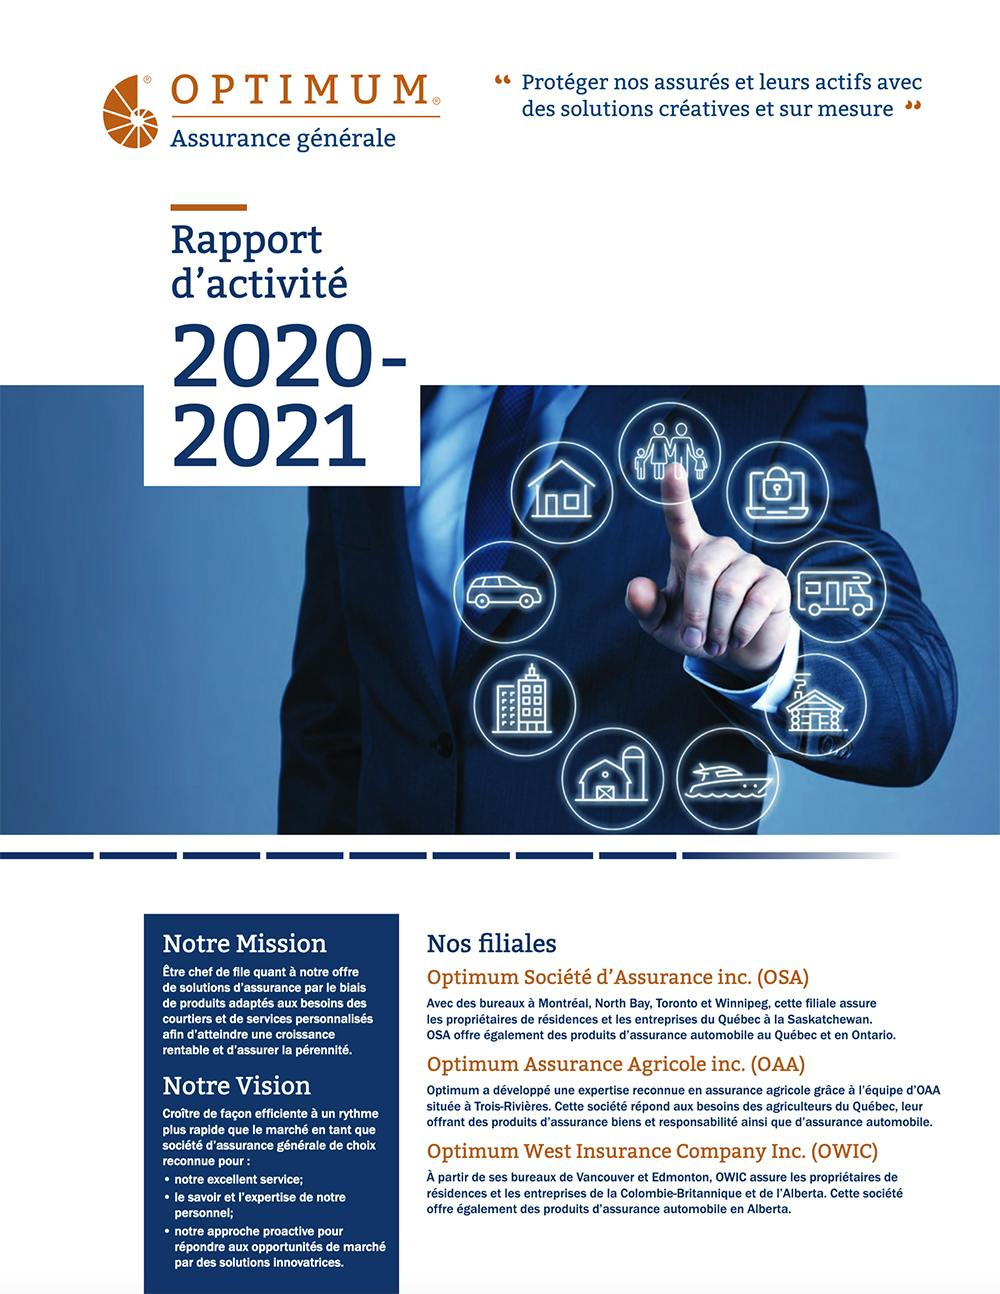 OGI - Rapport d'activité 2021-2020